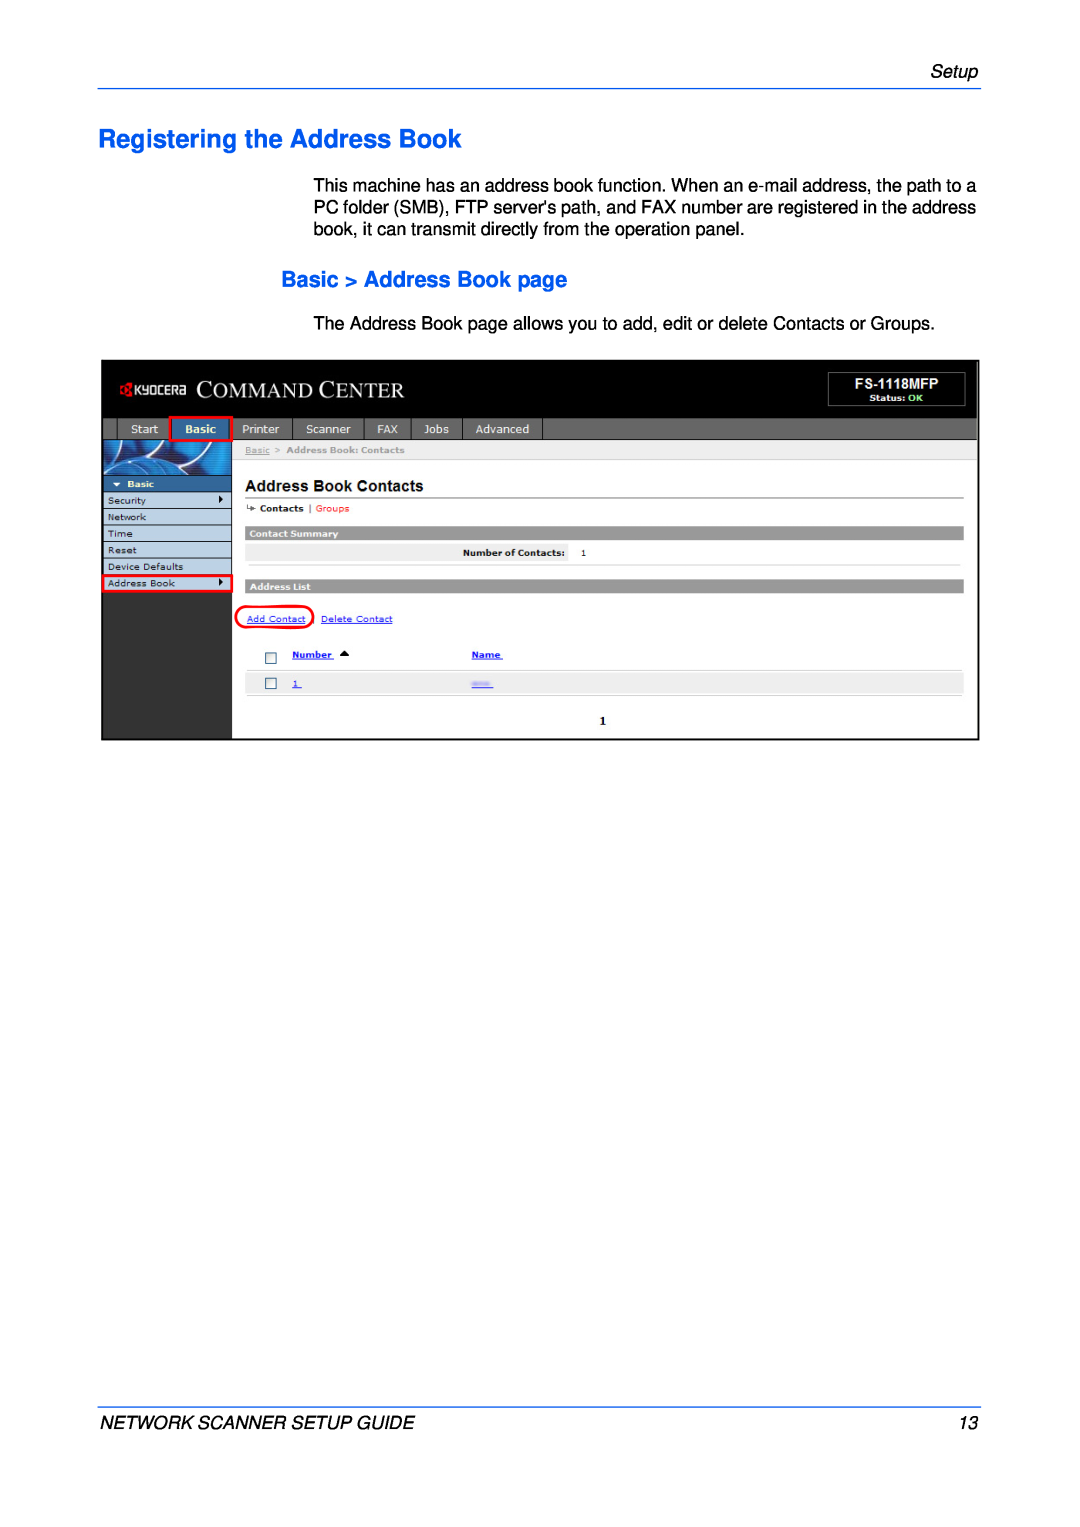 Kyocera FS-1118MFP, KM-1820 setup guide Registering the Address Book, Basic Address Book page 